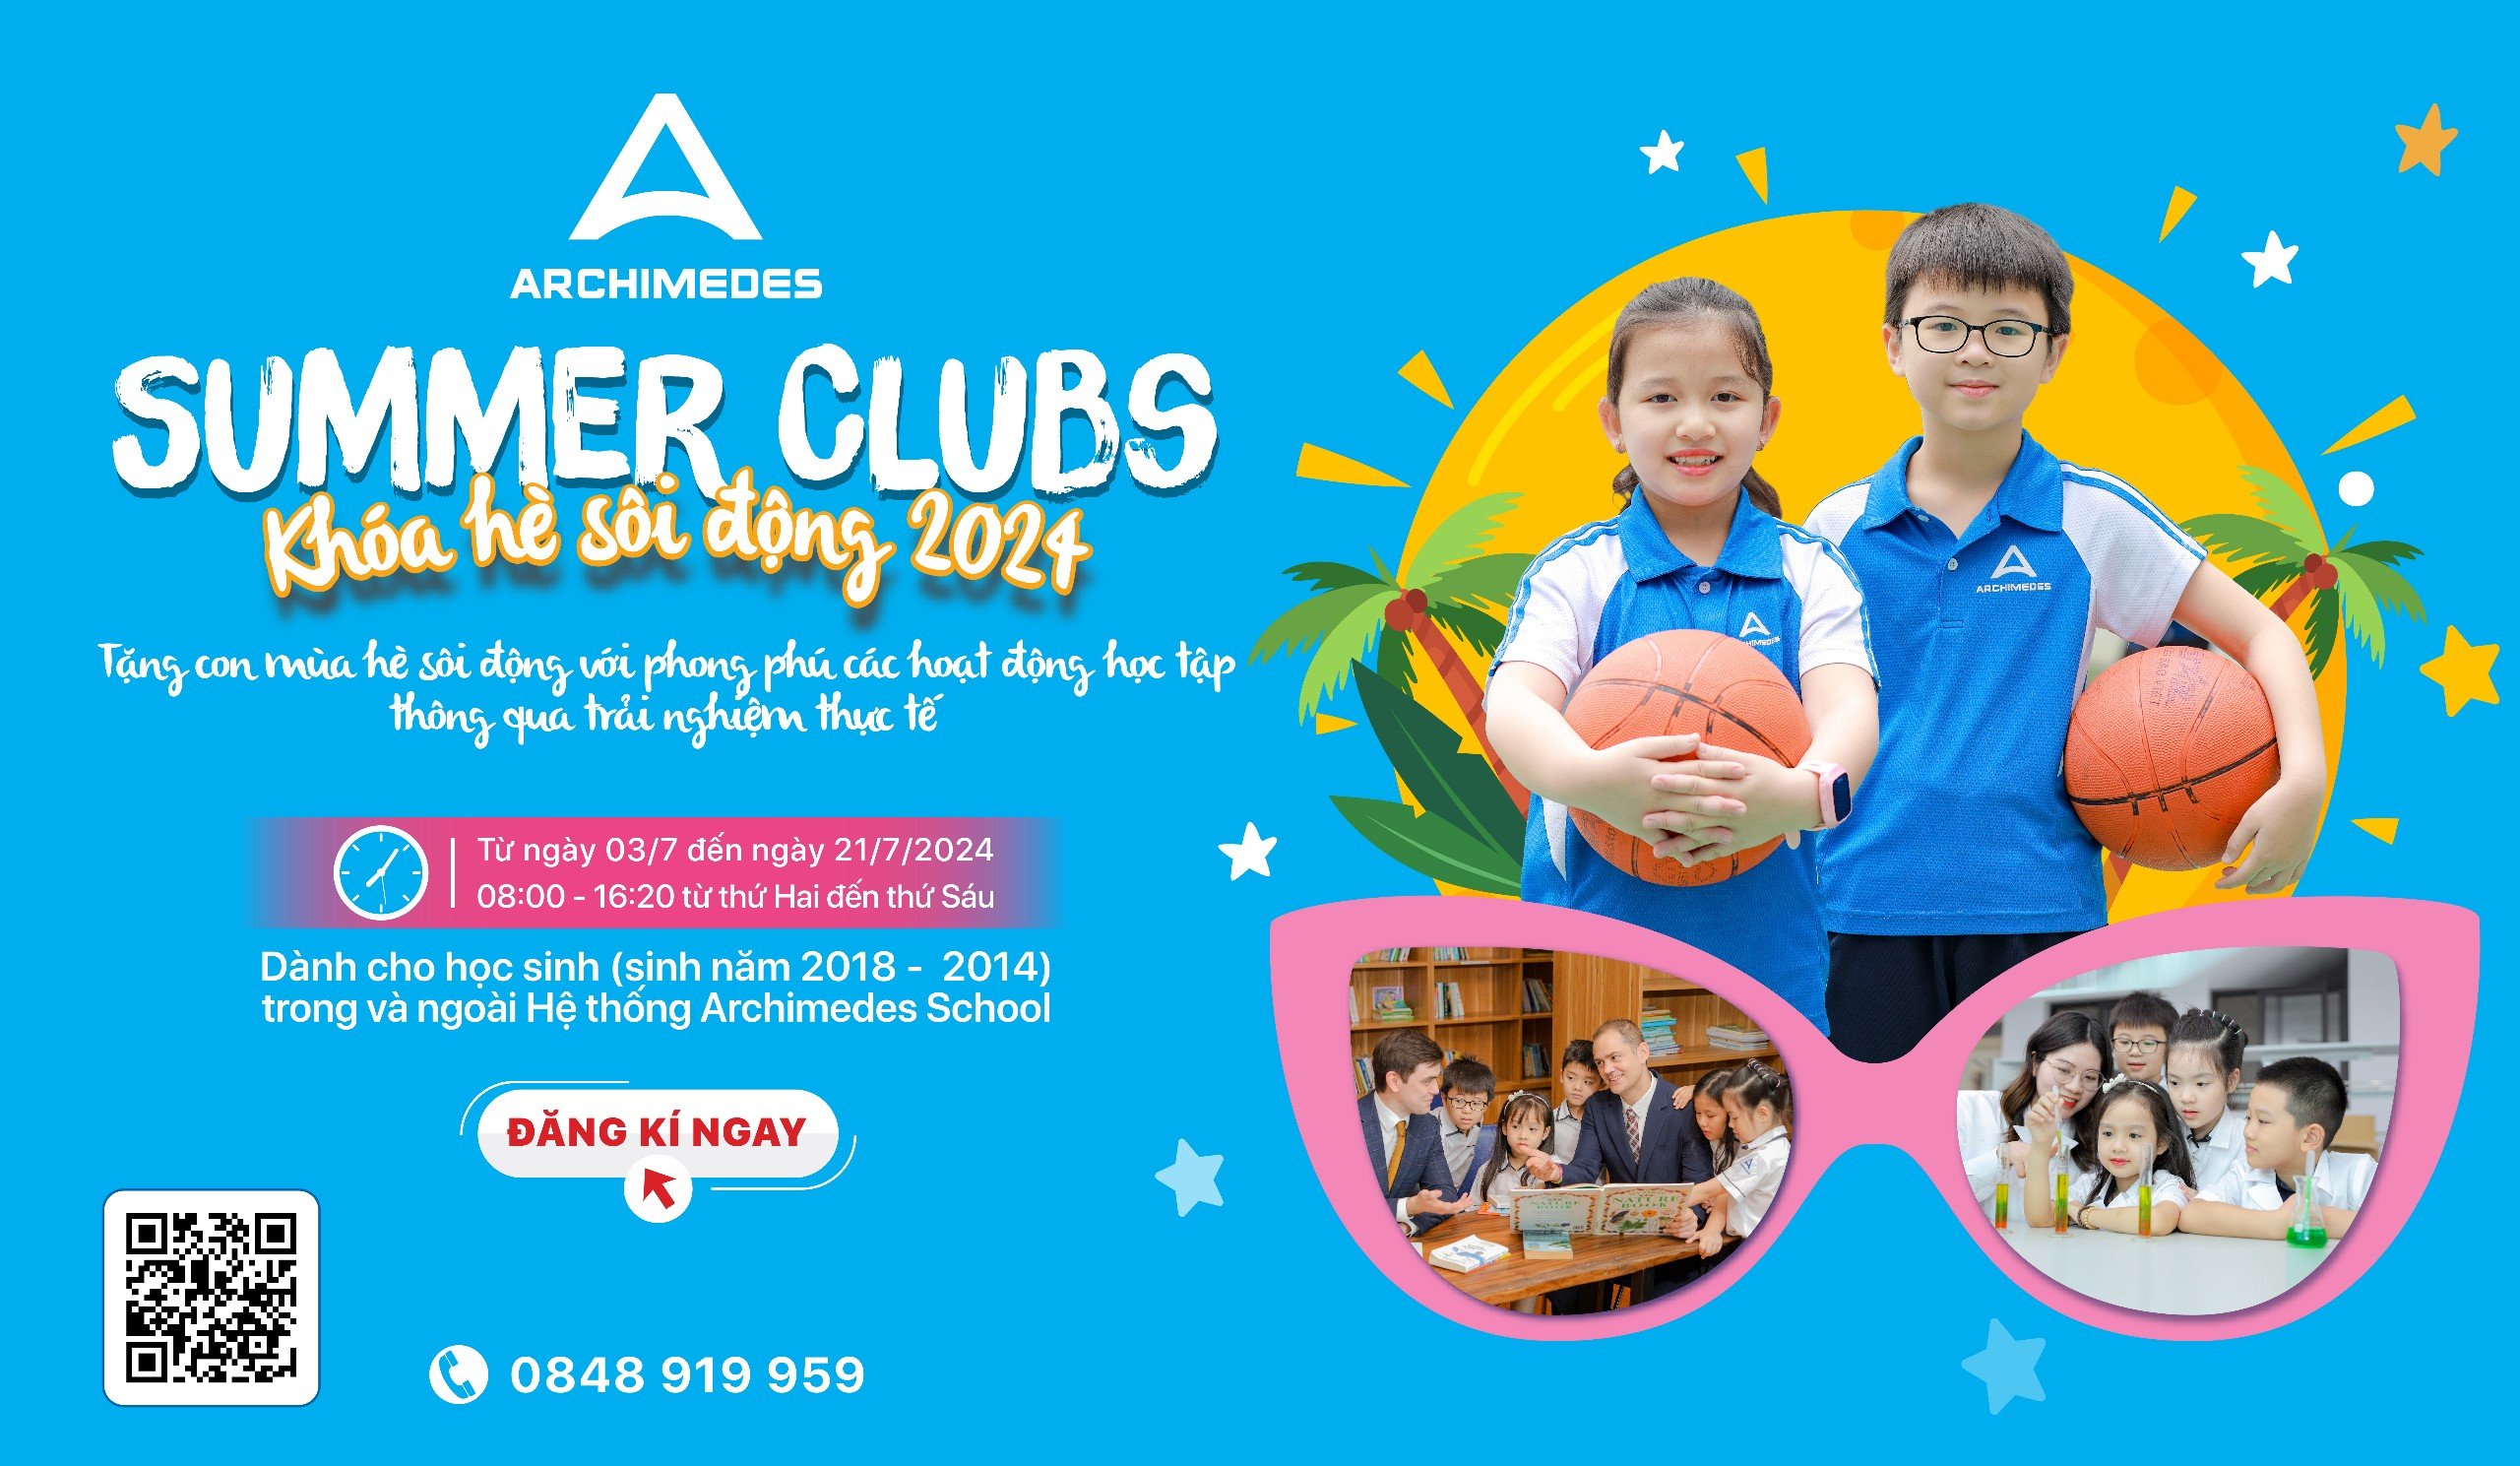 [ADAS] Archimedes Summer Clubs 2024: Tặng con mùa hè sôi động